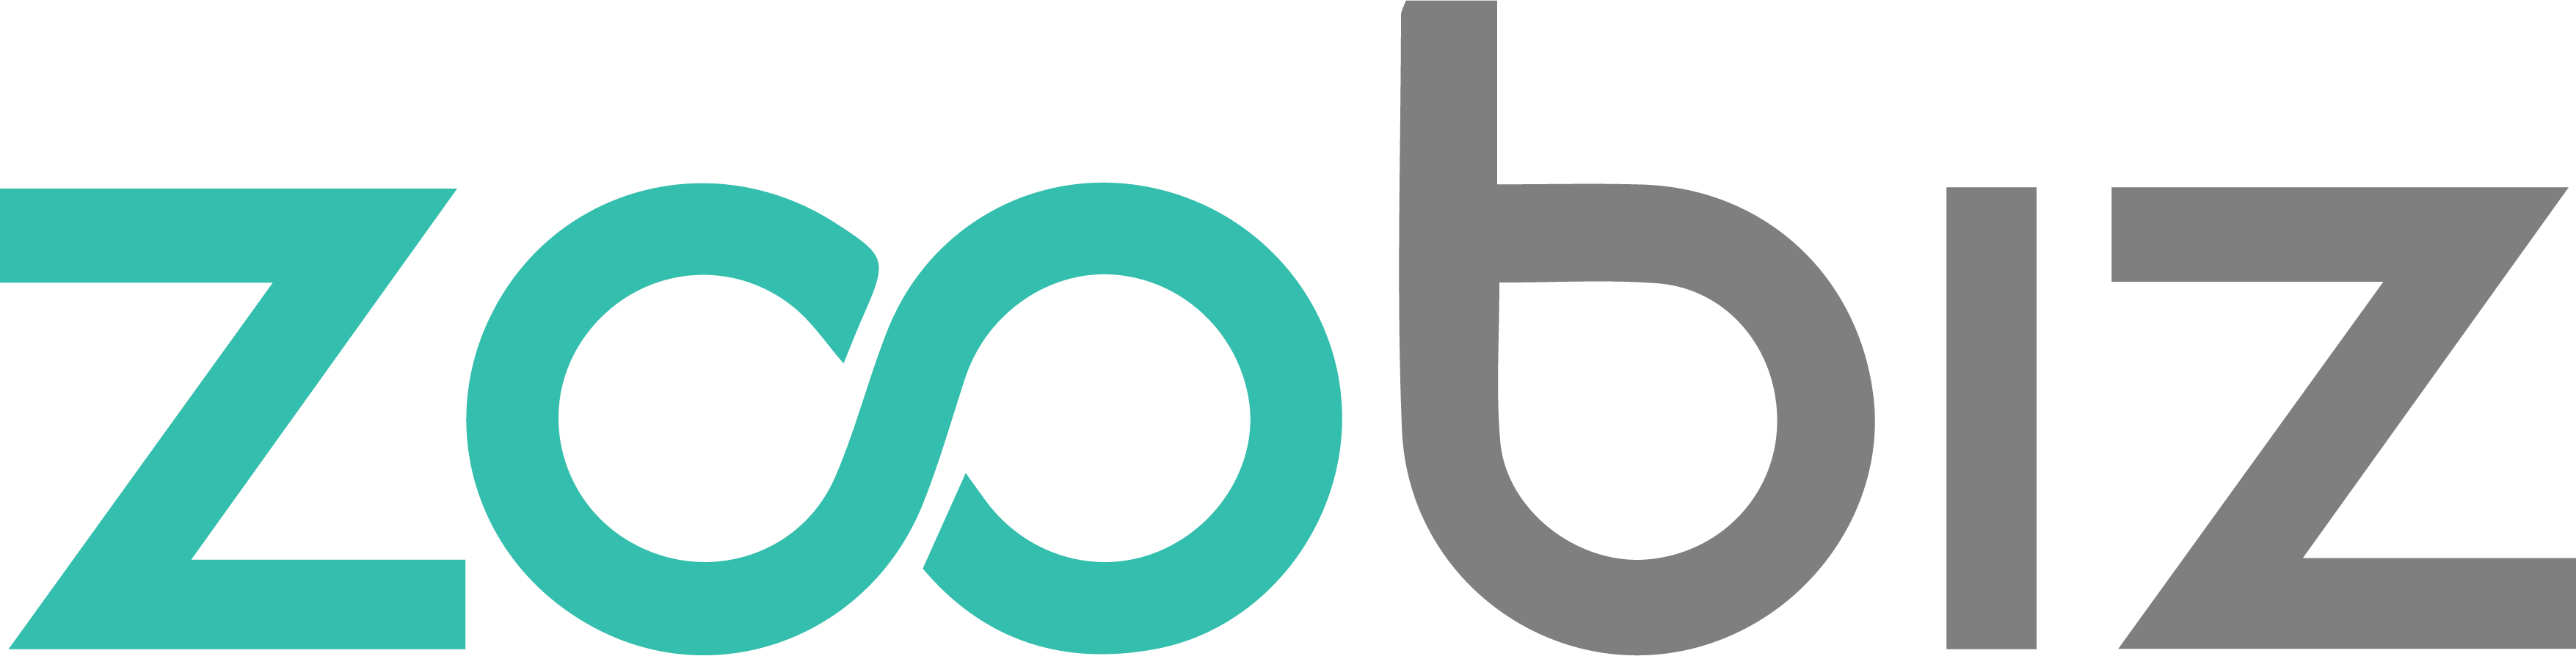 Zoobiz logo 1